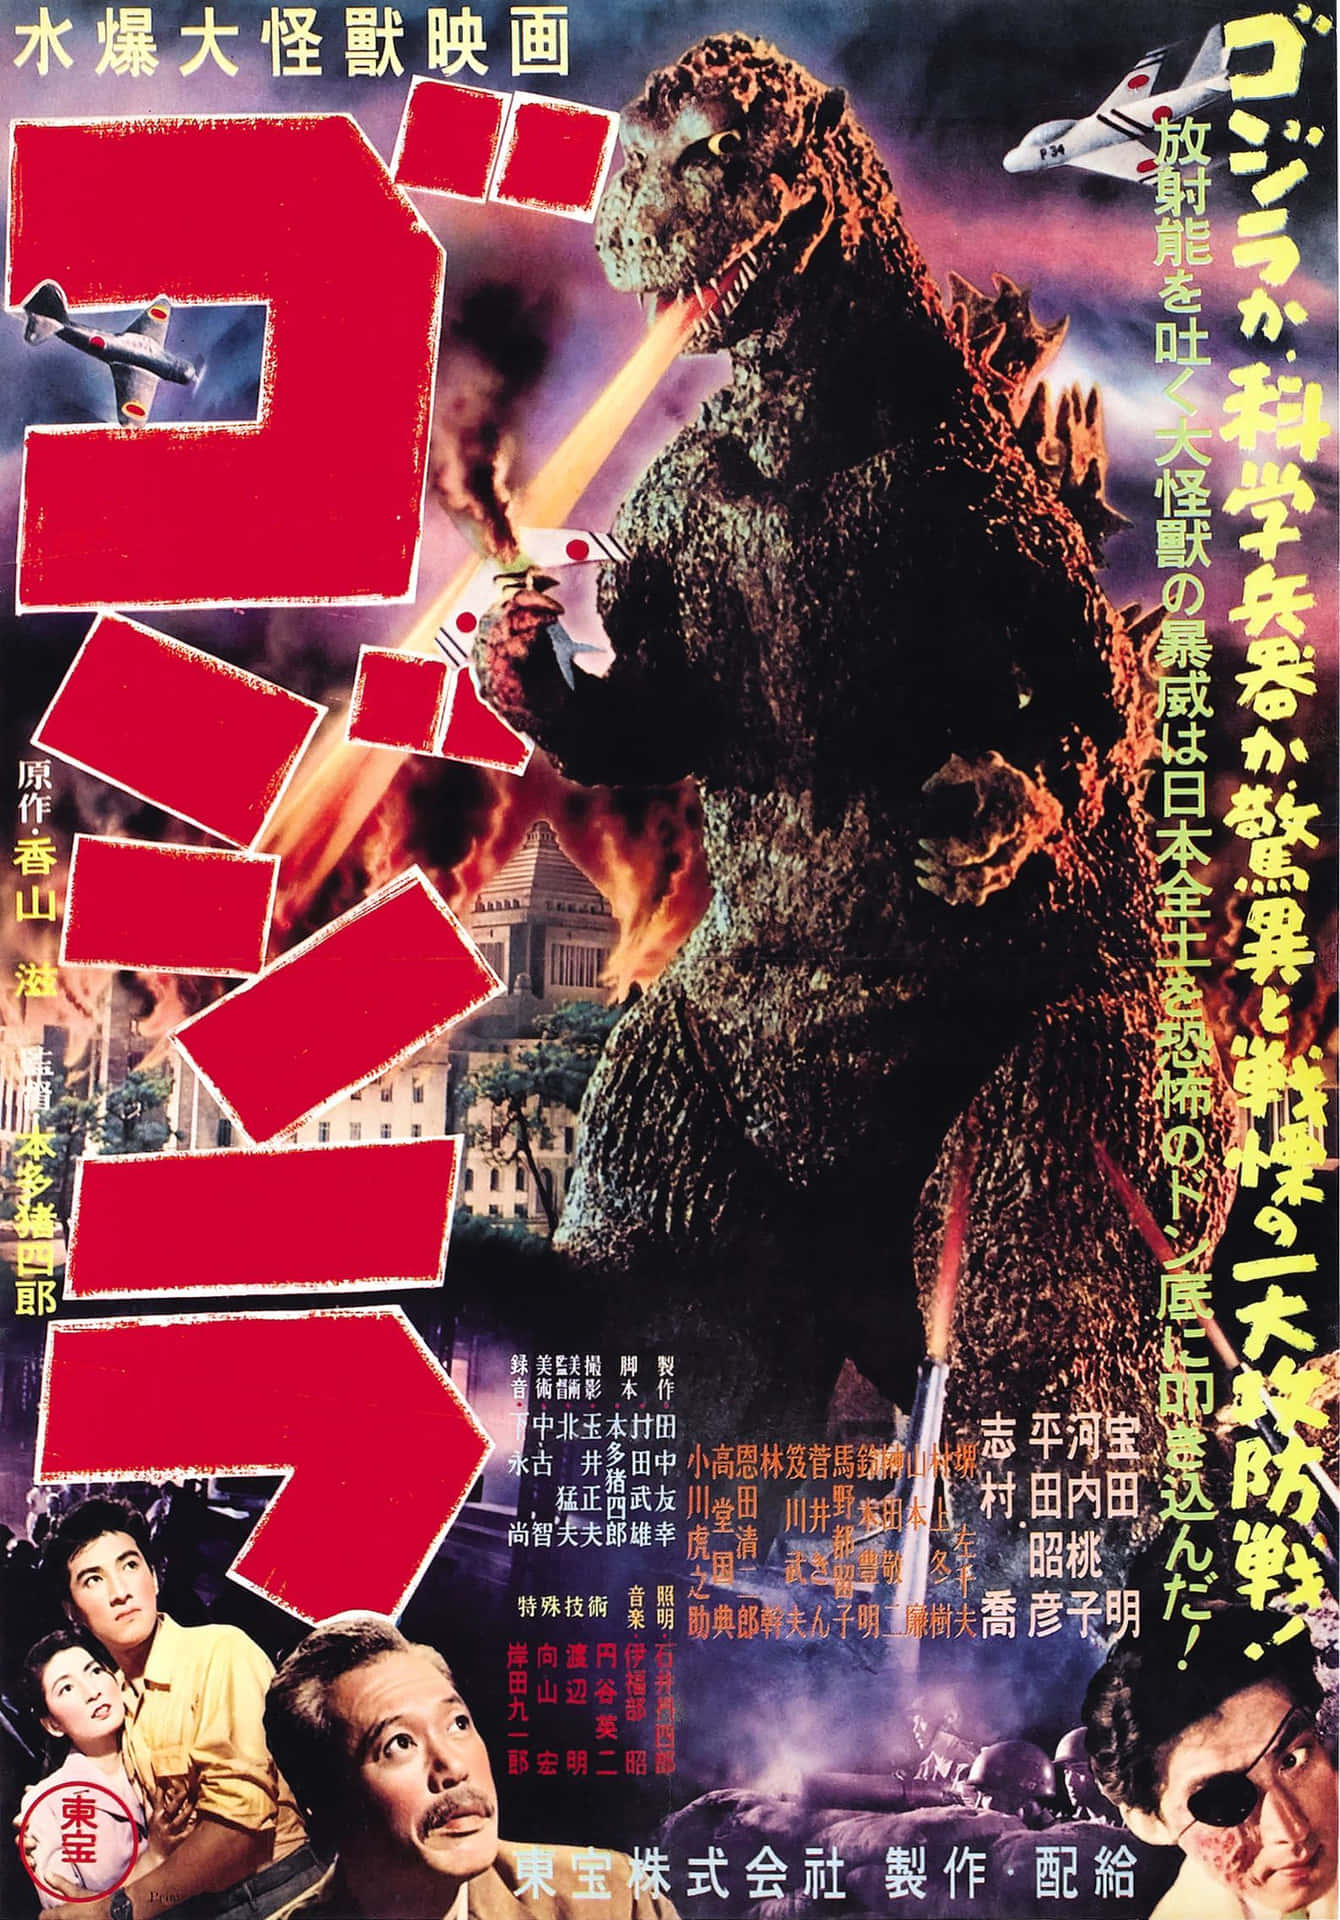 Iconic Poster Image Of Godzilla 1954 Wallpaper